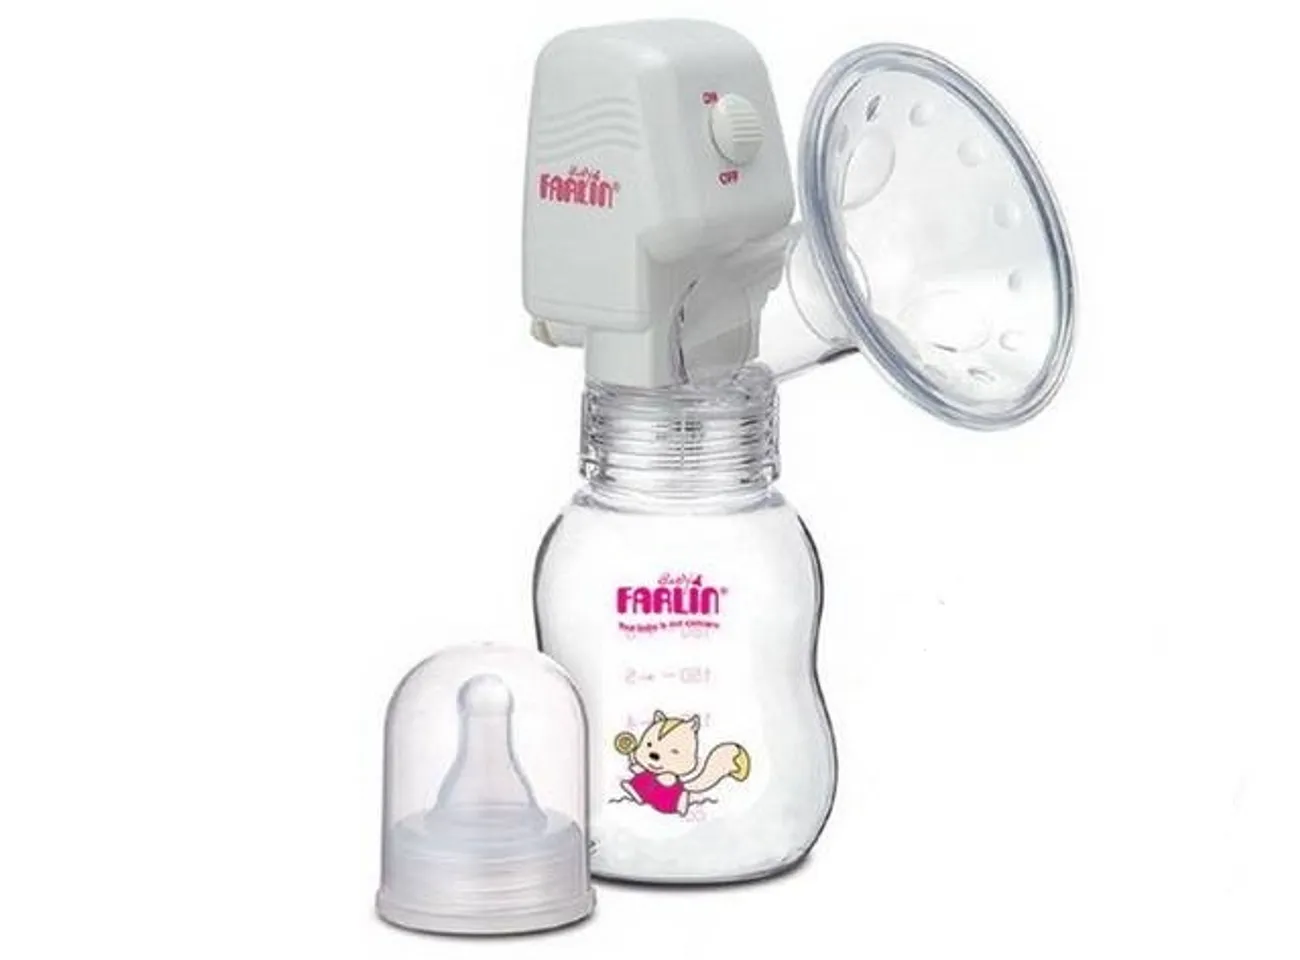 Máy hút sữa Farlin BF 639 với miếng chắn silicone mềm giúp làm dịu cơn đau và kích thích sữa chảy ra nhanh